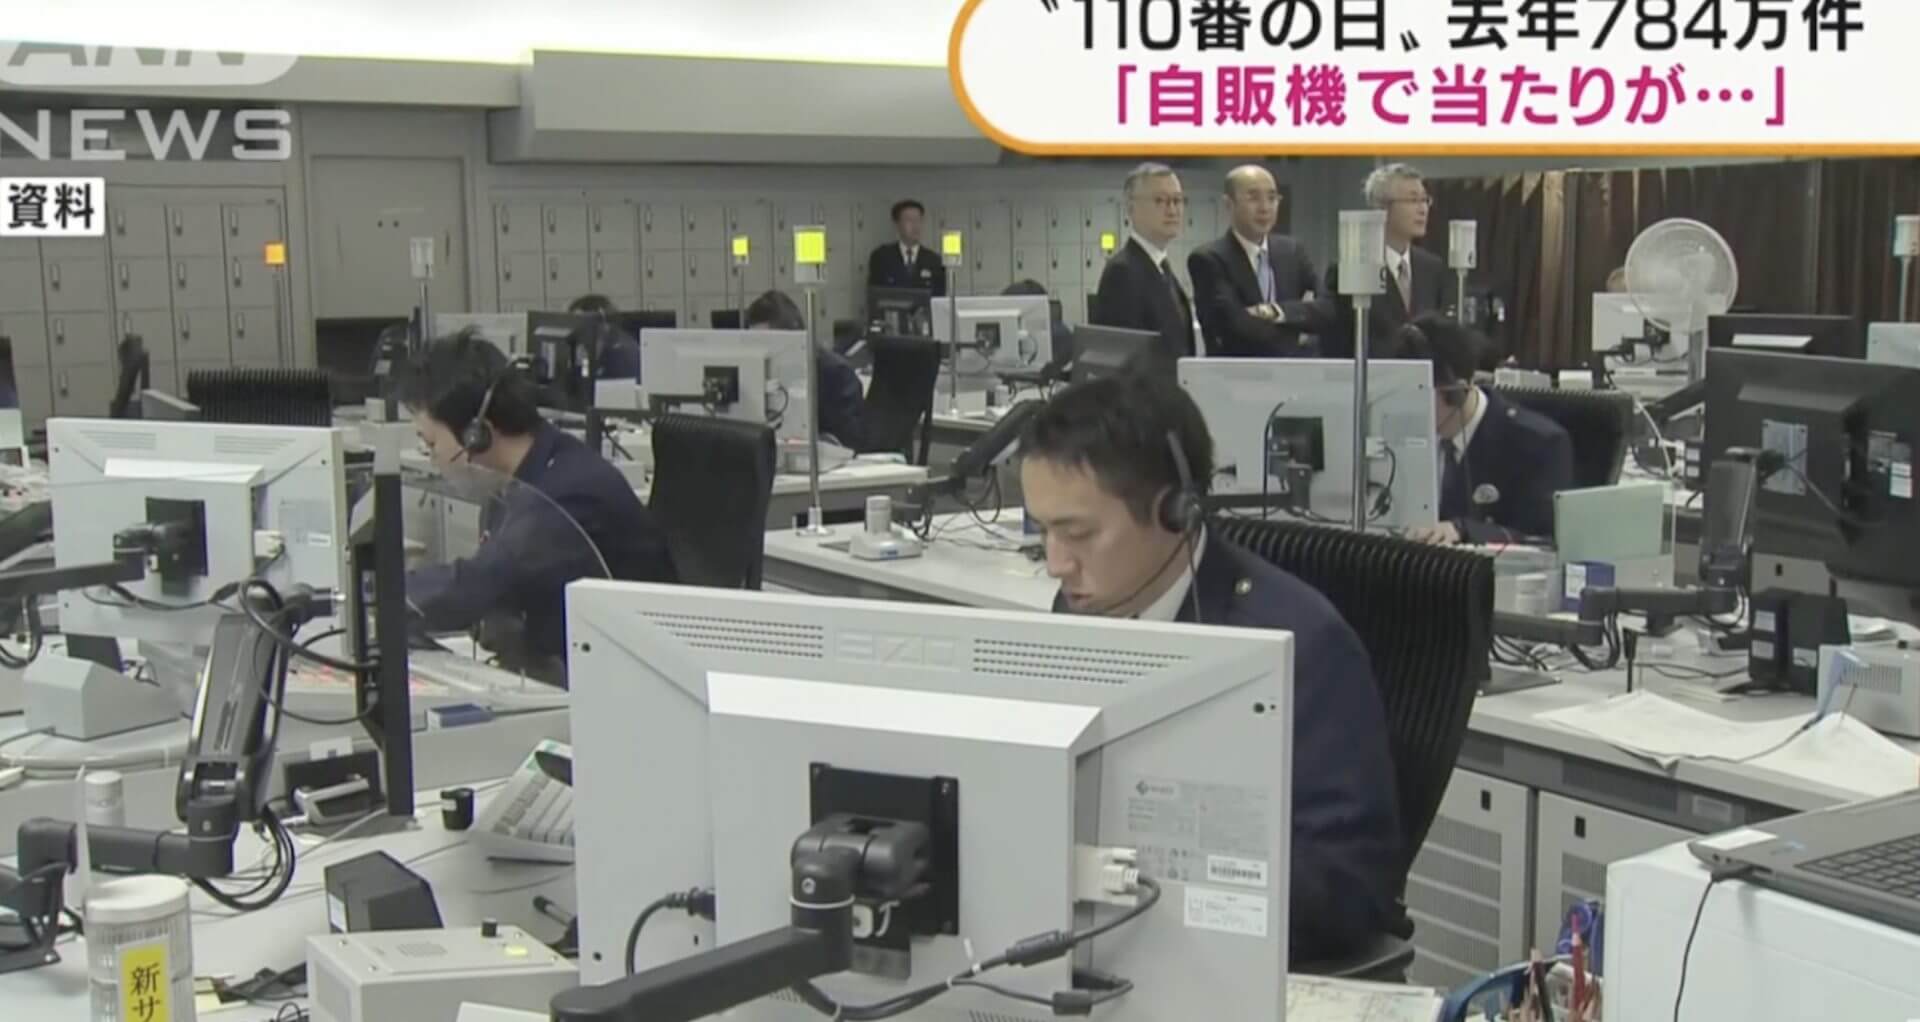 Chamadas emergenciais sobem no Japão, porém, nem sempre são emergências 